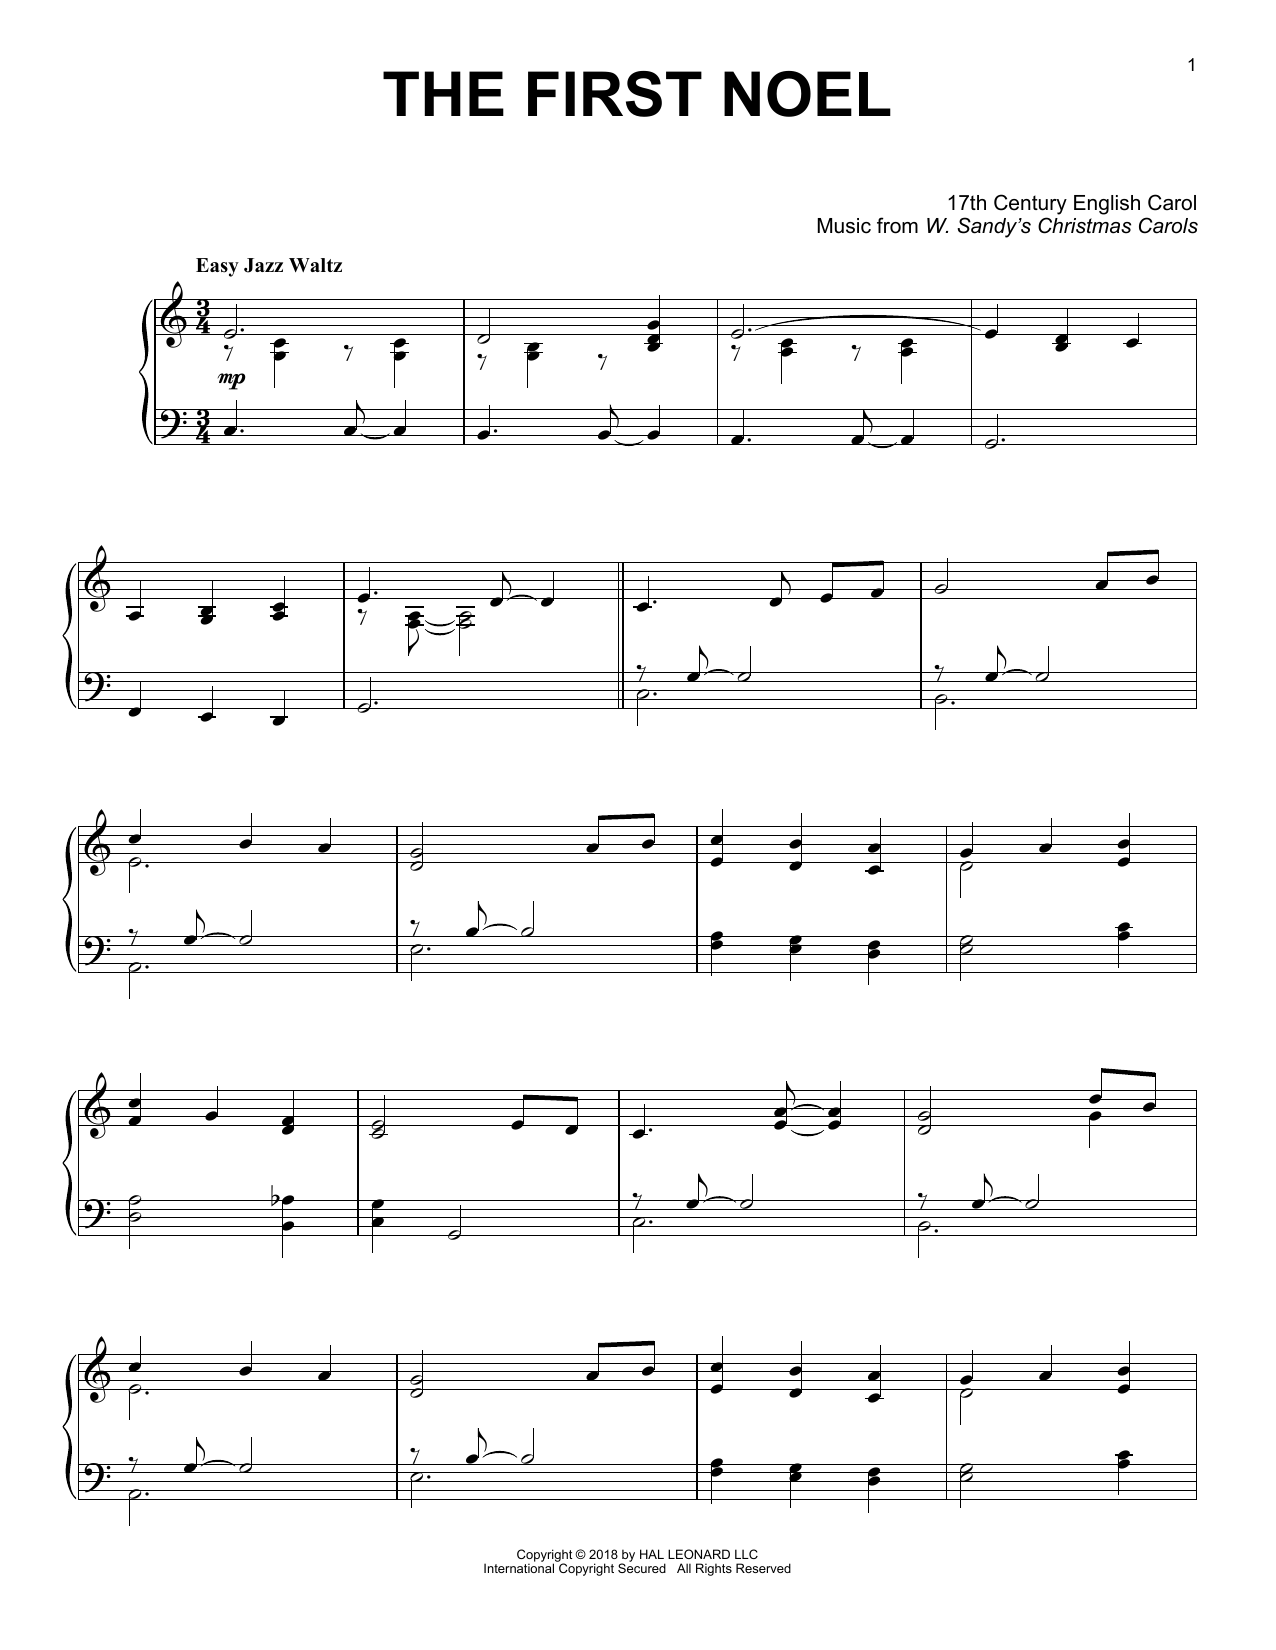 Download 17th Century English Carol The First Noel [Jazz version] Sheet Music